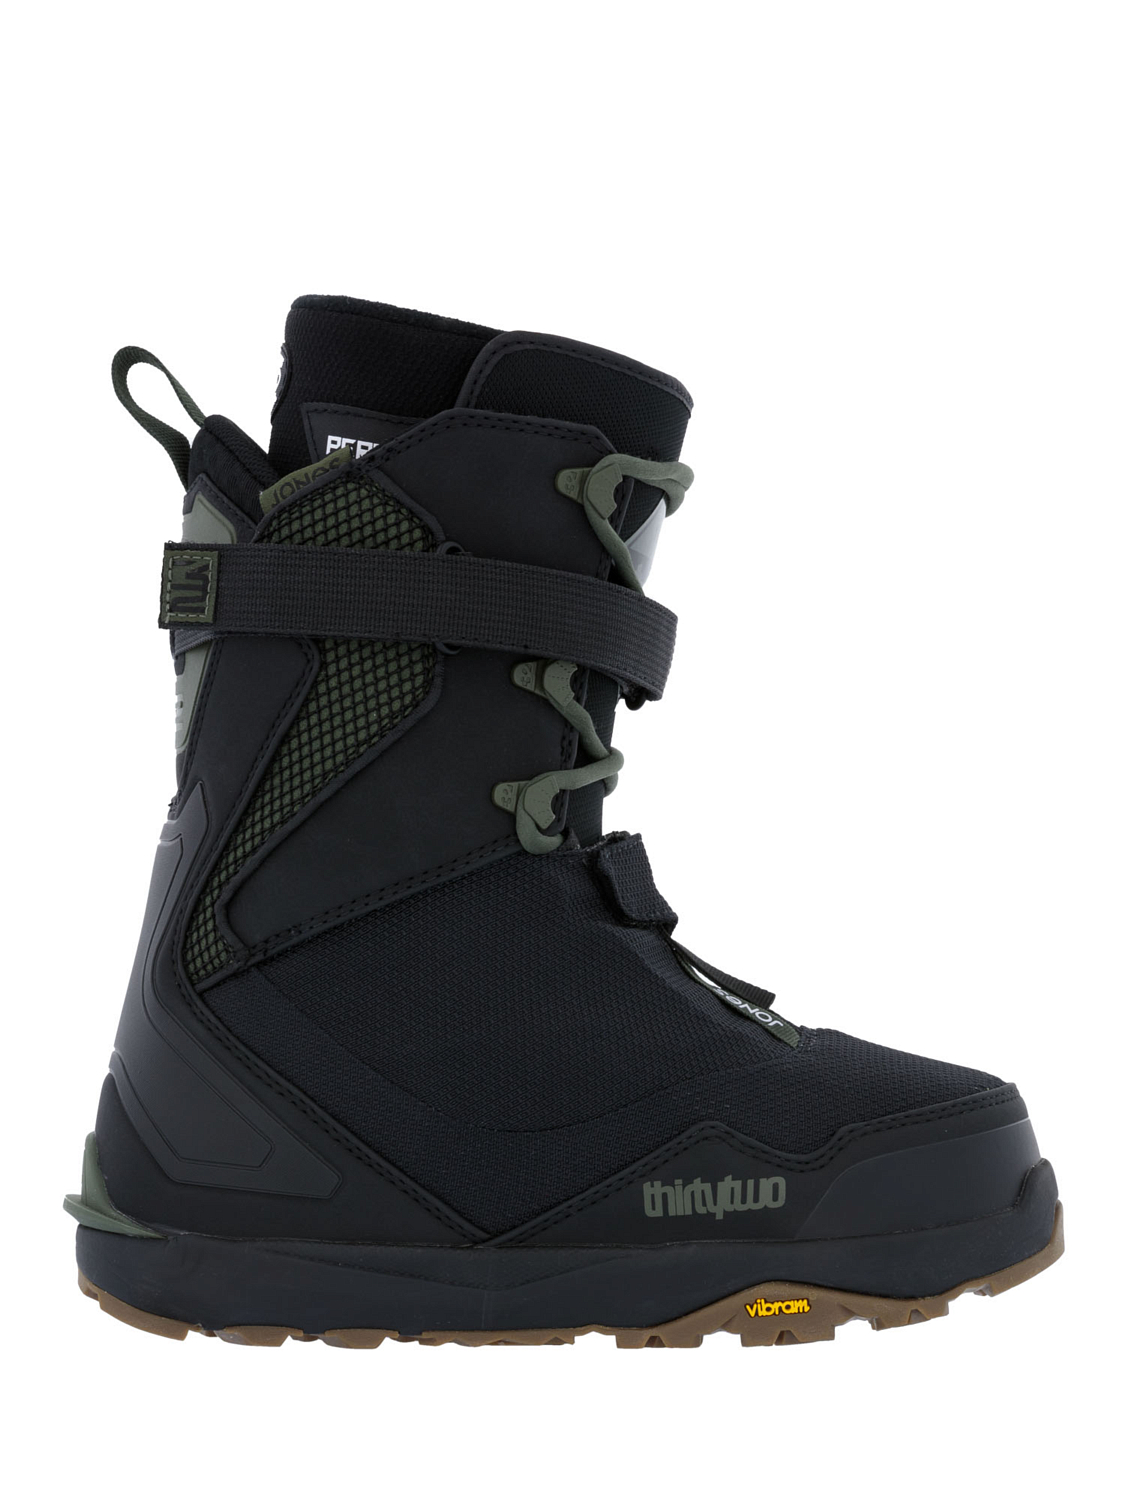 Ботинки для сноуборда ThirtyTwo TM-2 Jones Black/Green/Gum — купитьнедорого, цены в магазине КАНТ